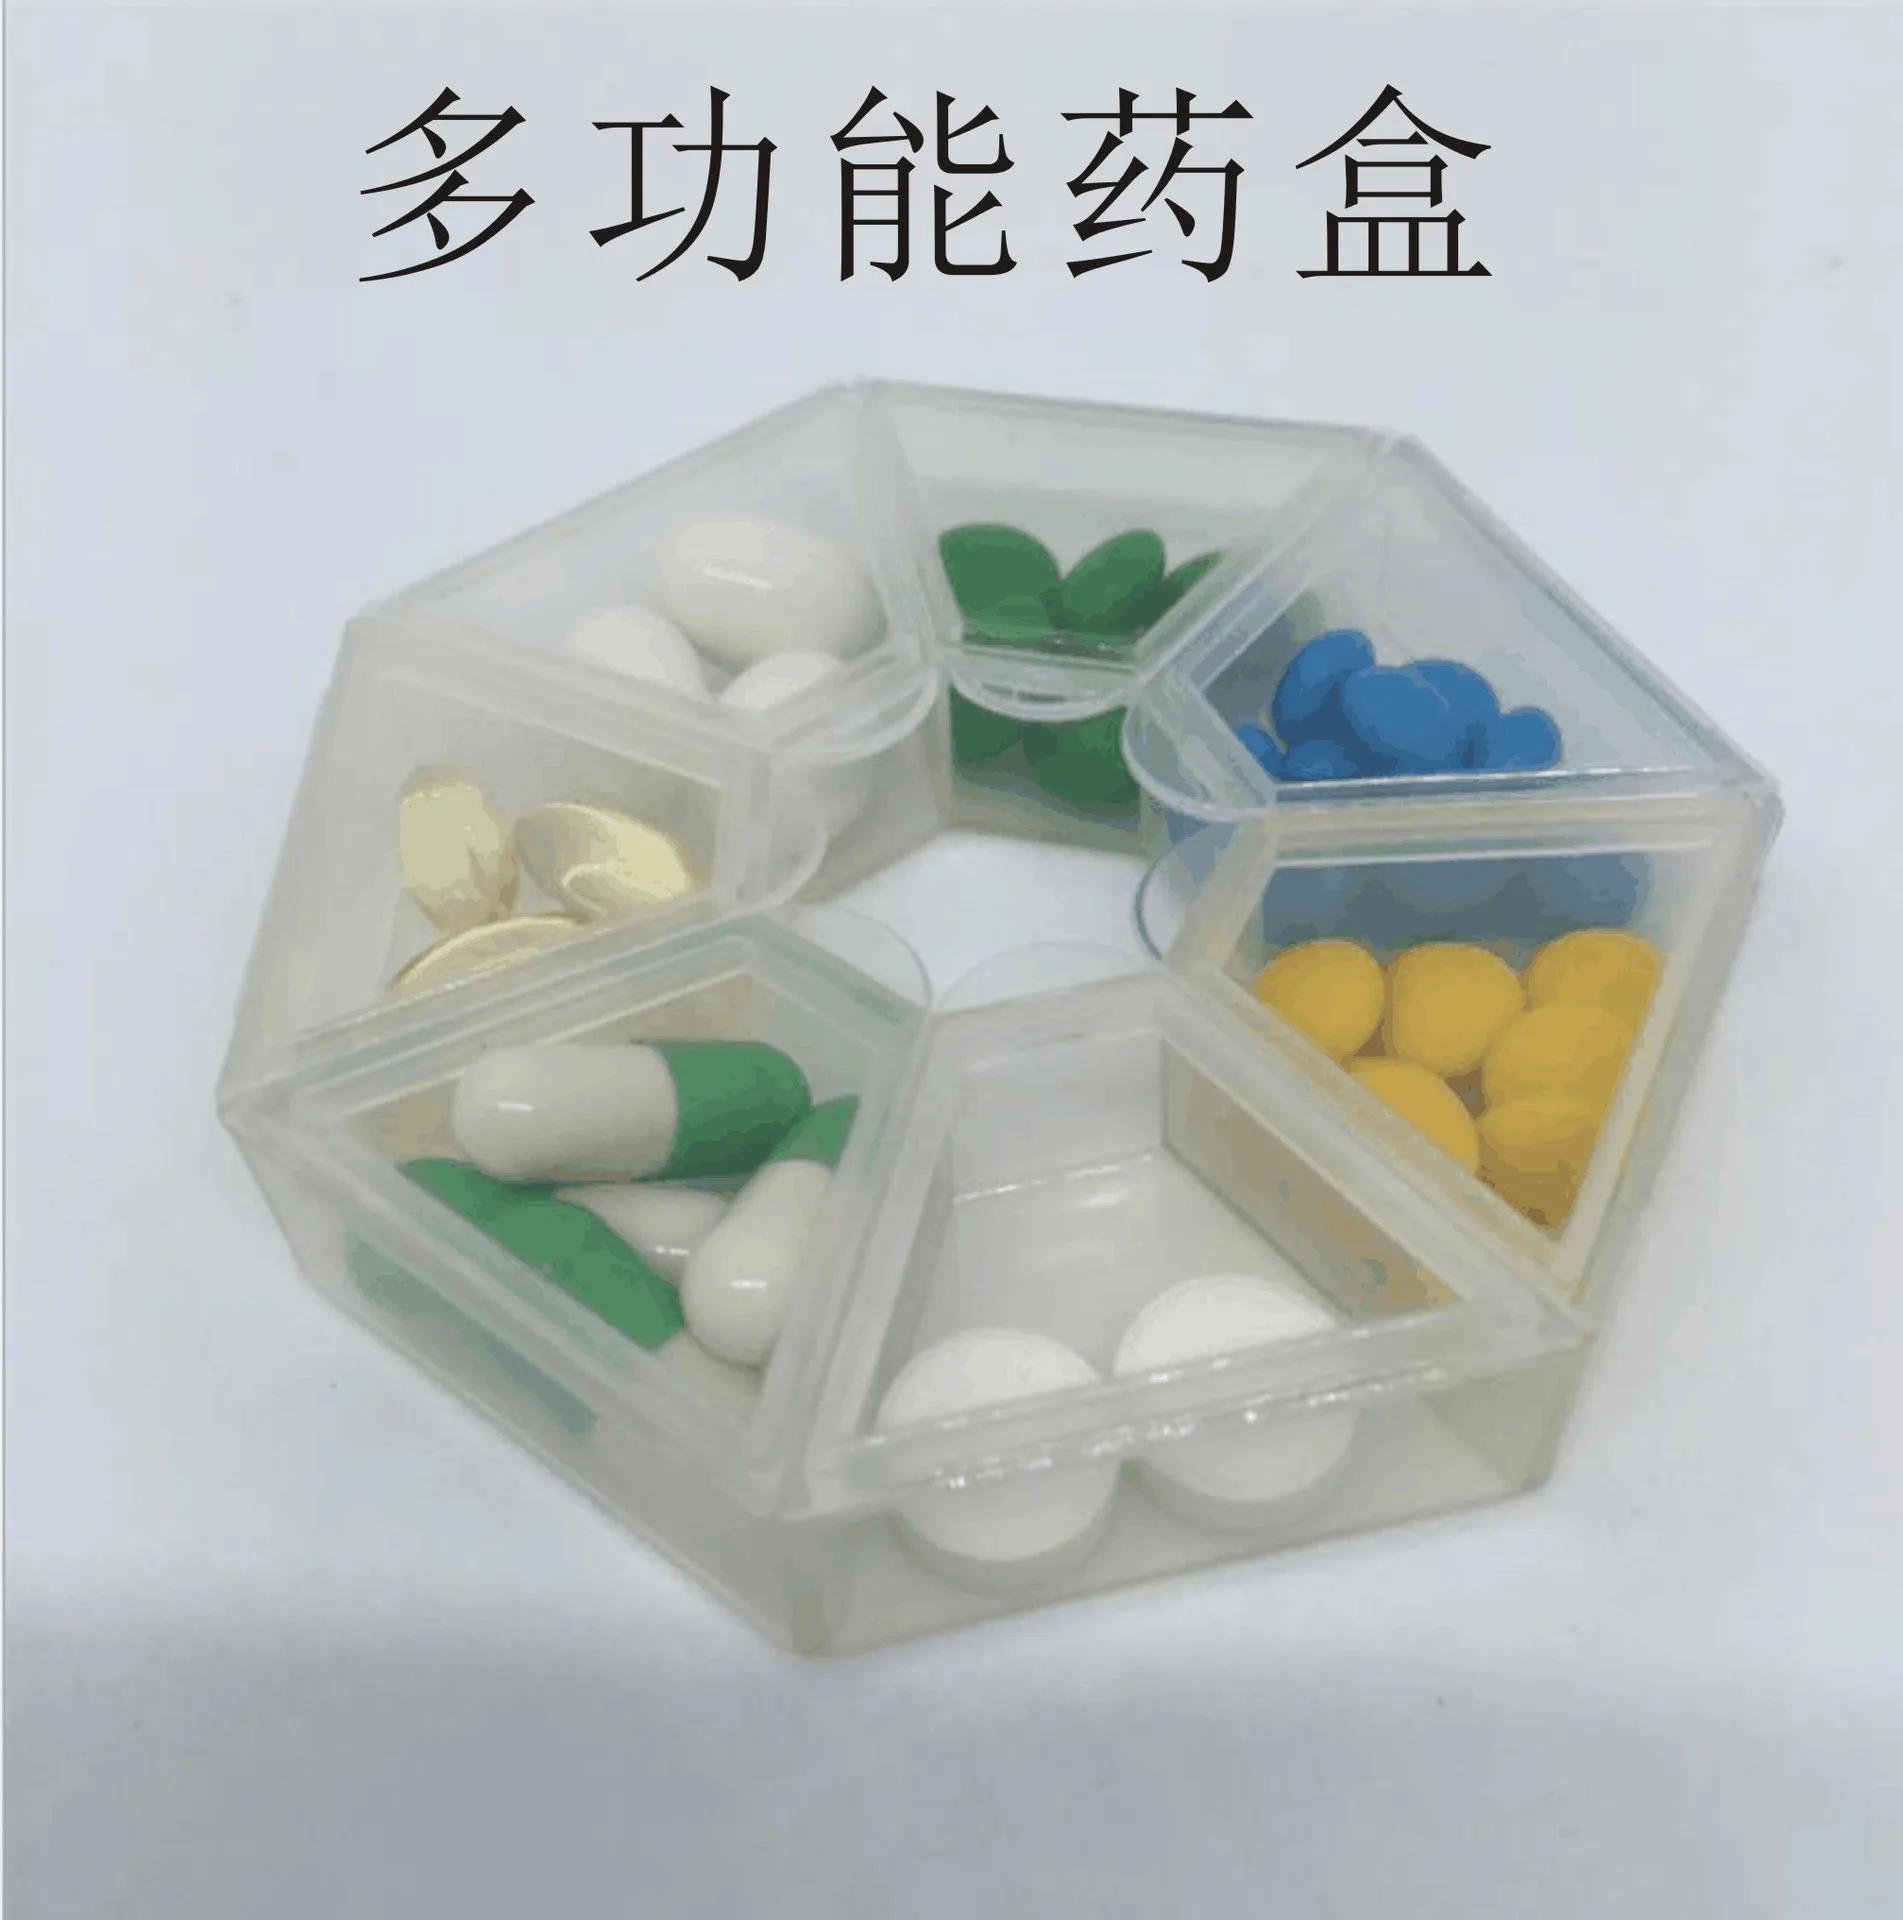 Пластиковый футляр для таблеток на 7 сеток, коробка конфет на 7 дней, портативный держатель для таблеток, органайзер для путешествий, контейнер-дозатор